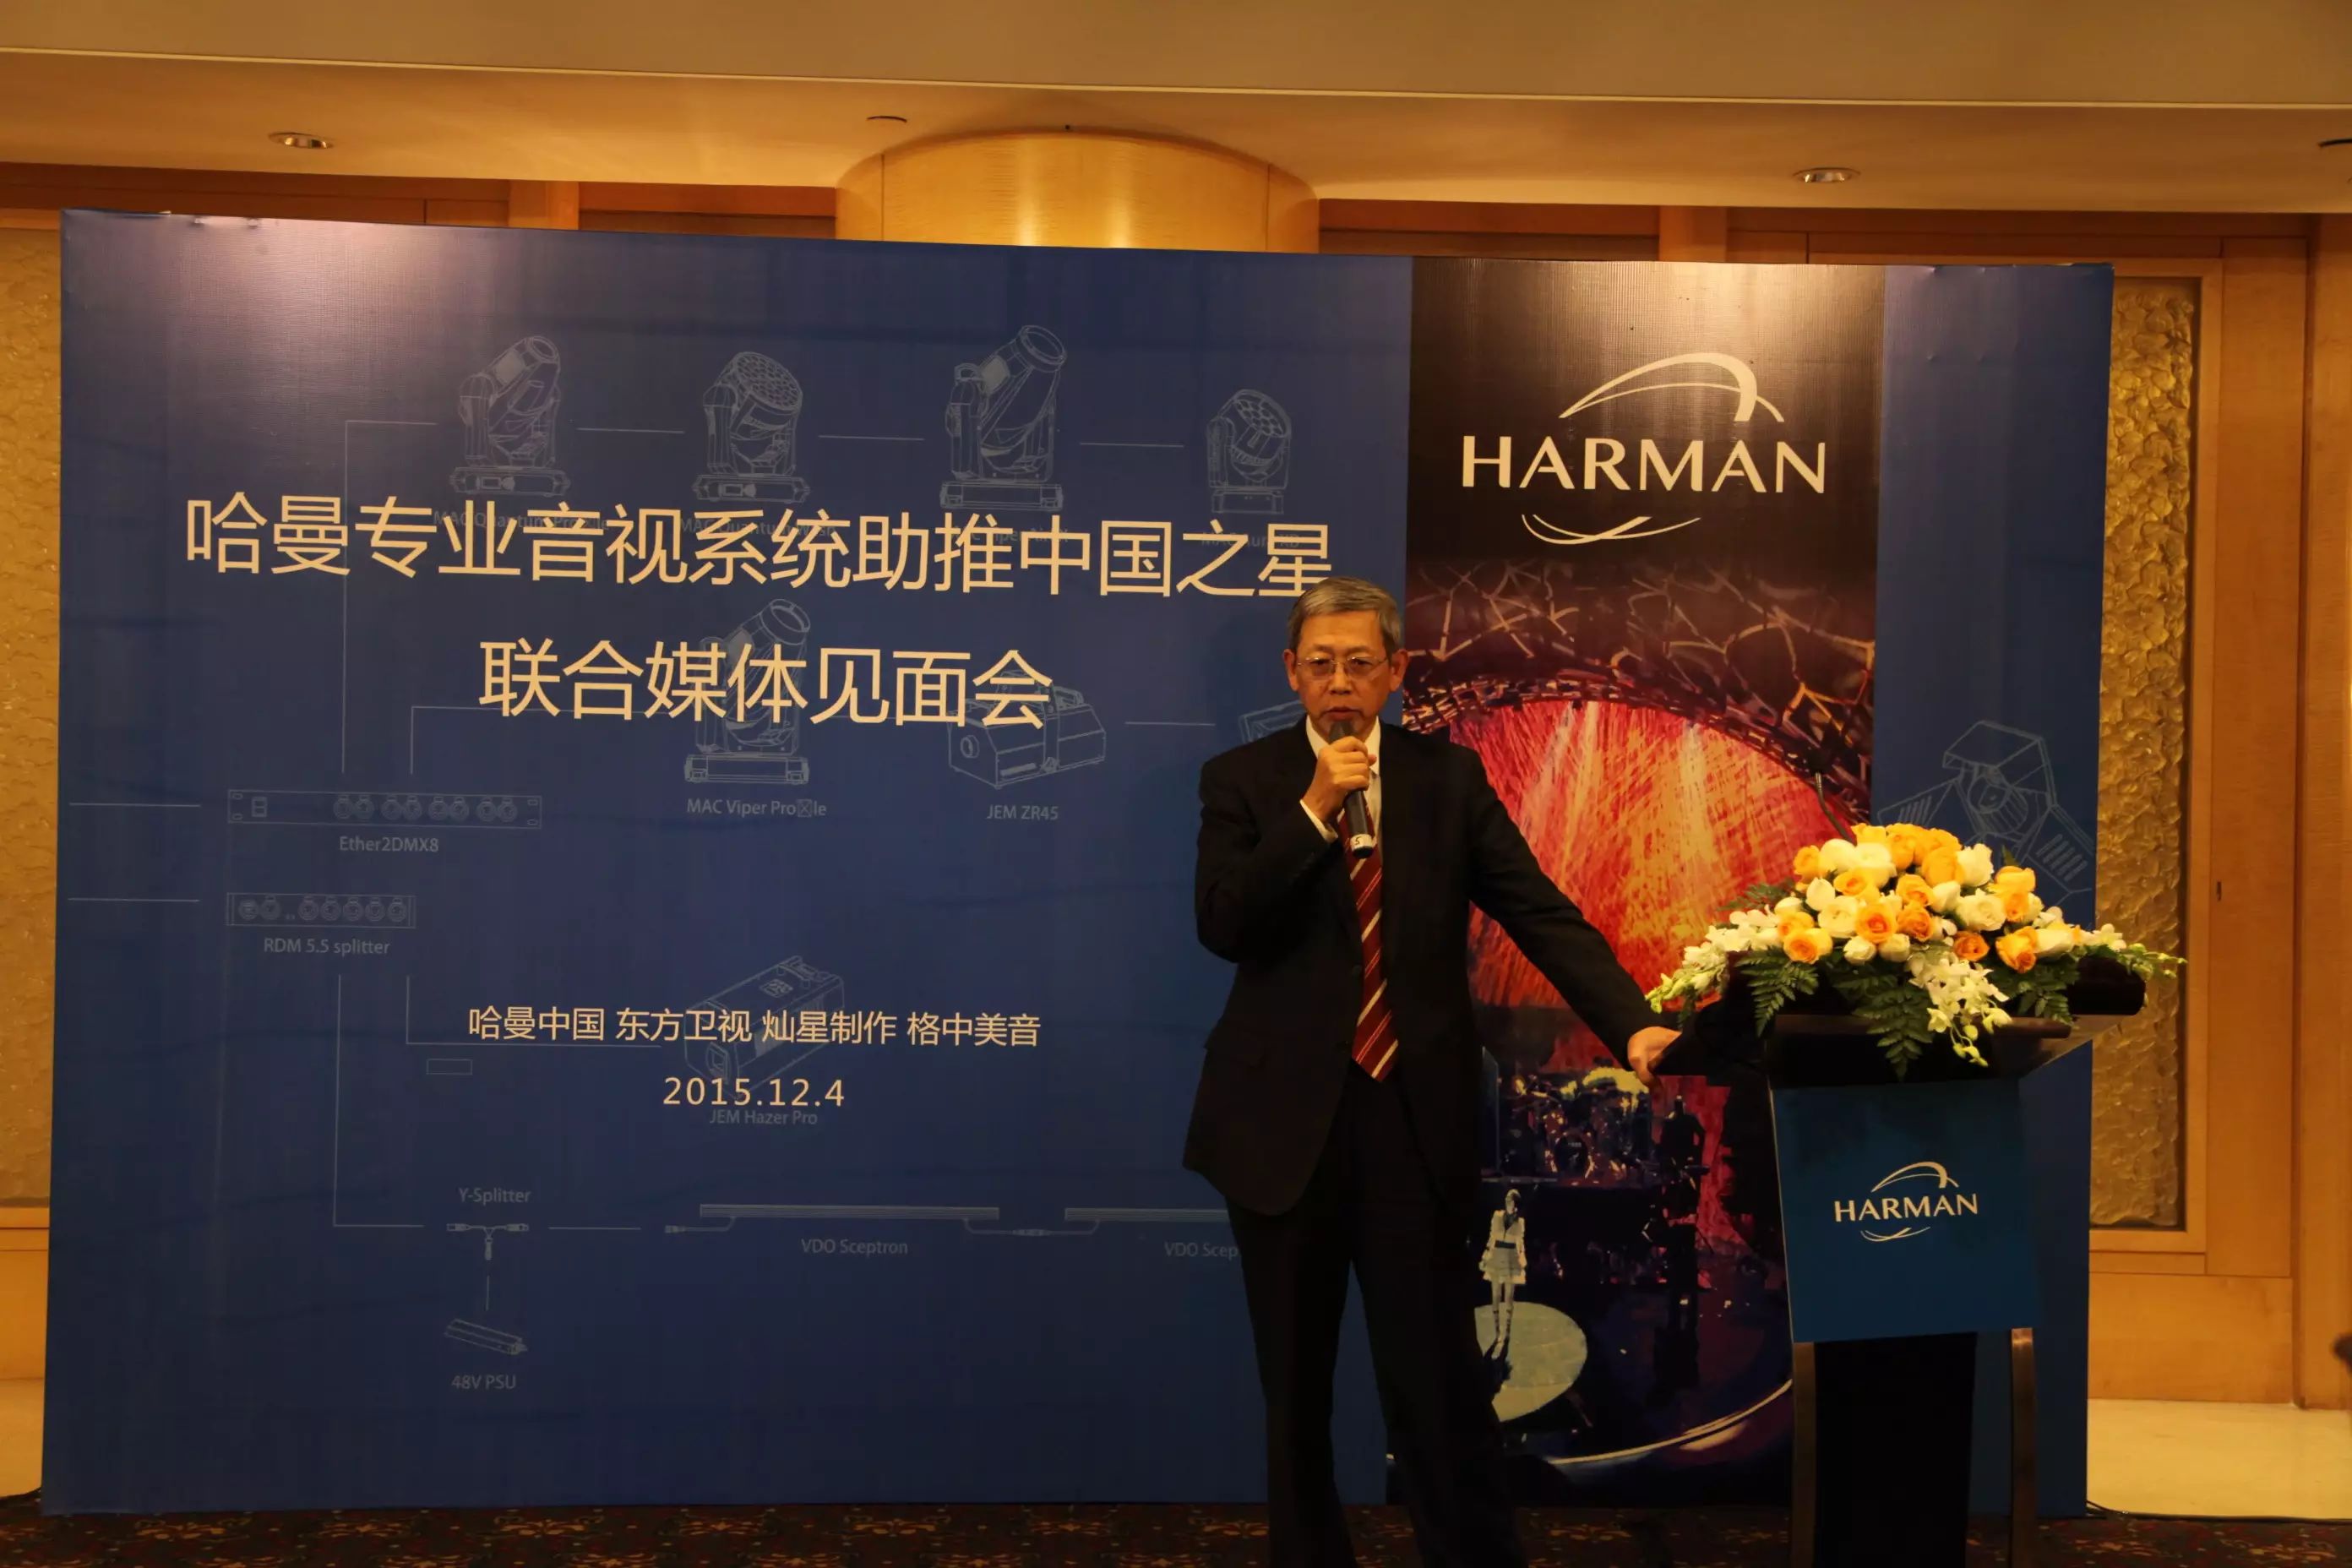 技术 国际顶级灯光设计联手哈曼专业音视系统,打造《中国之星》璀璨